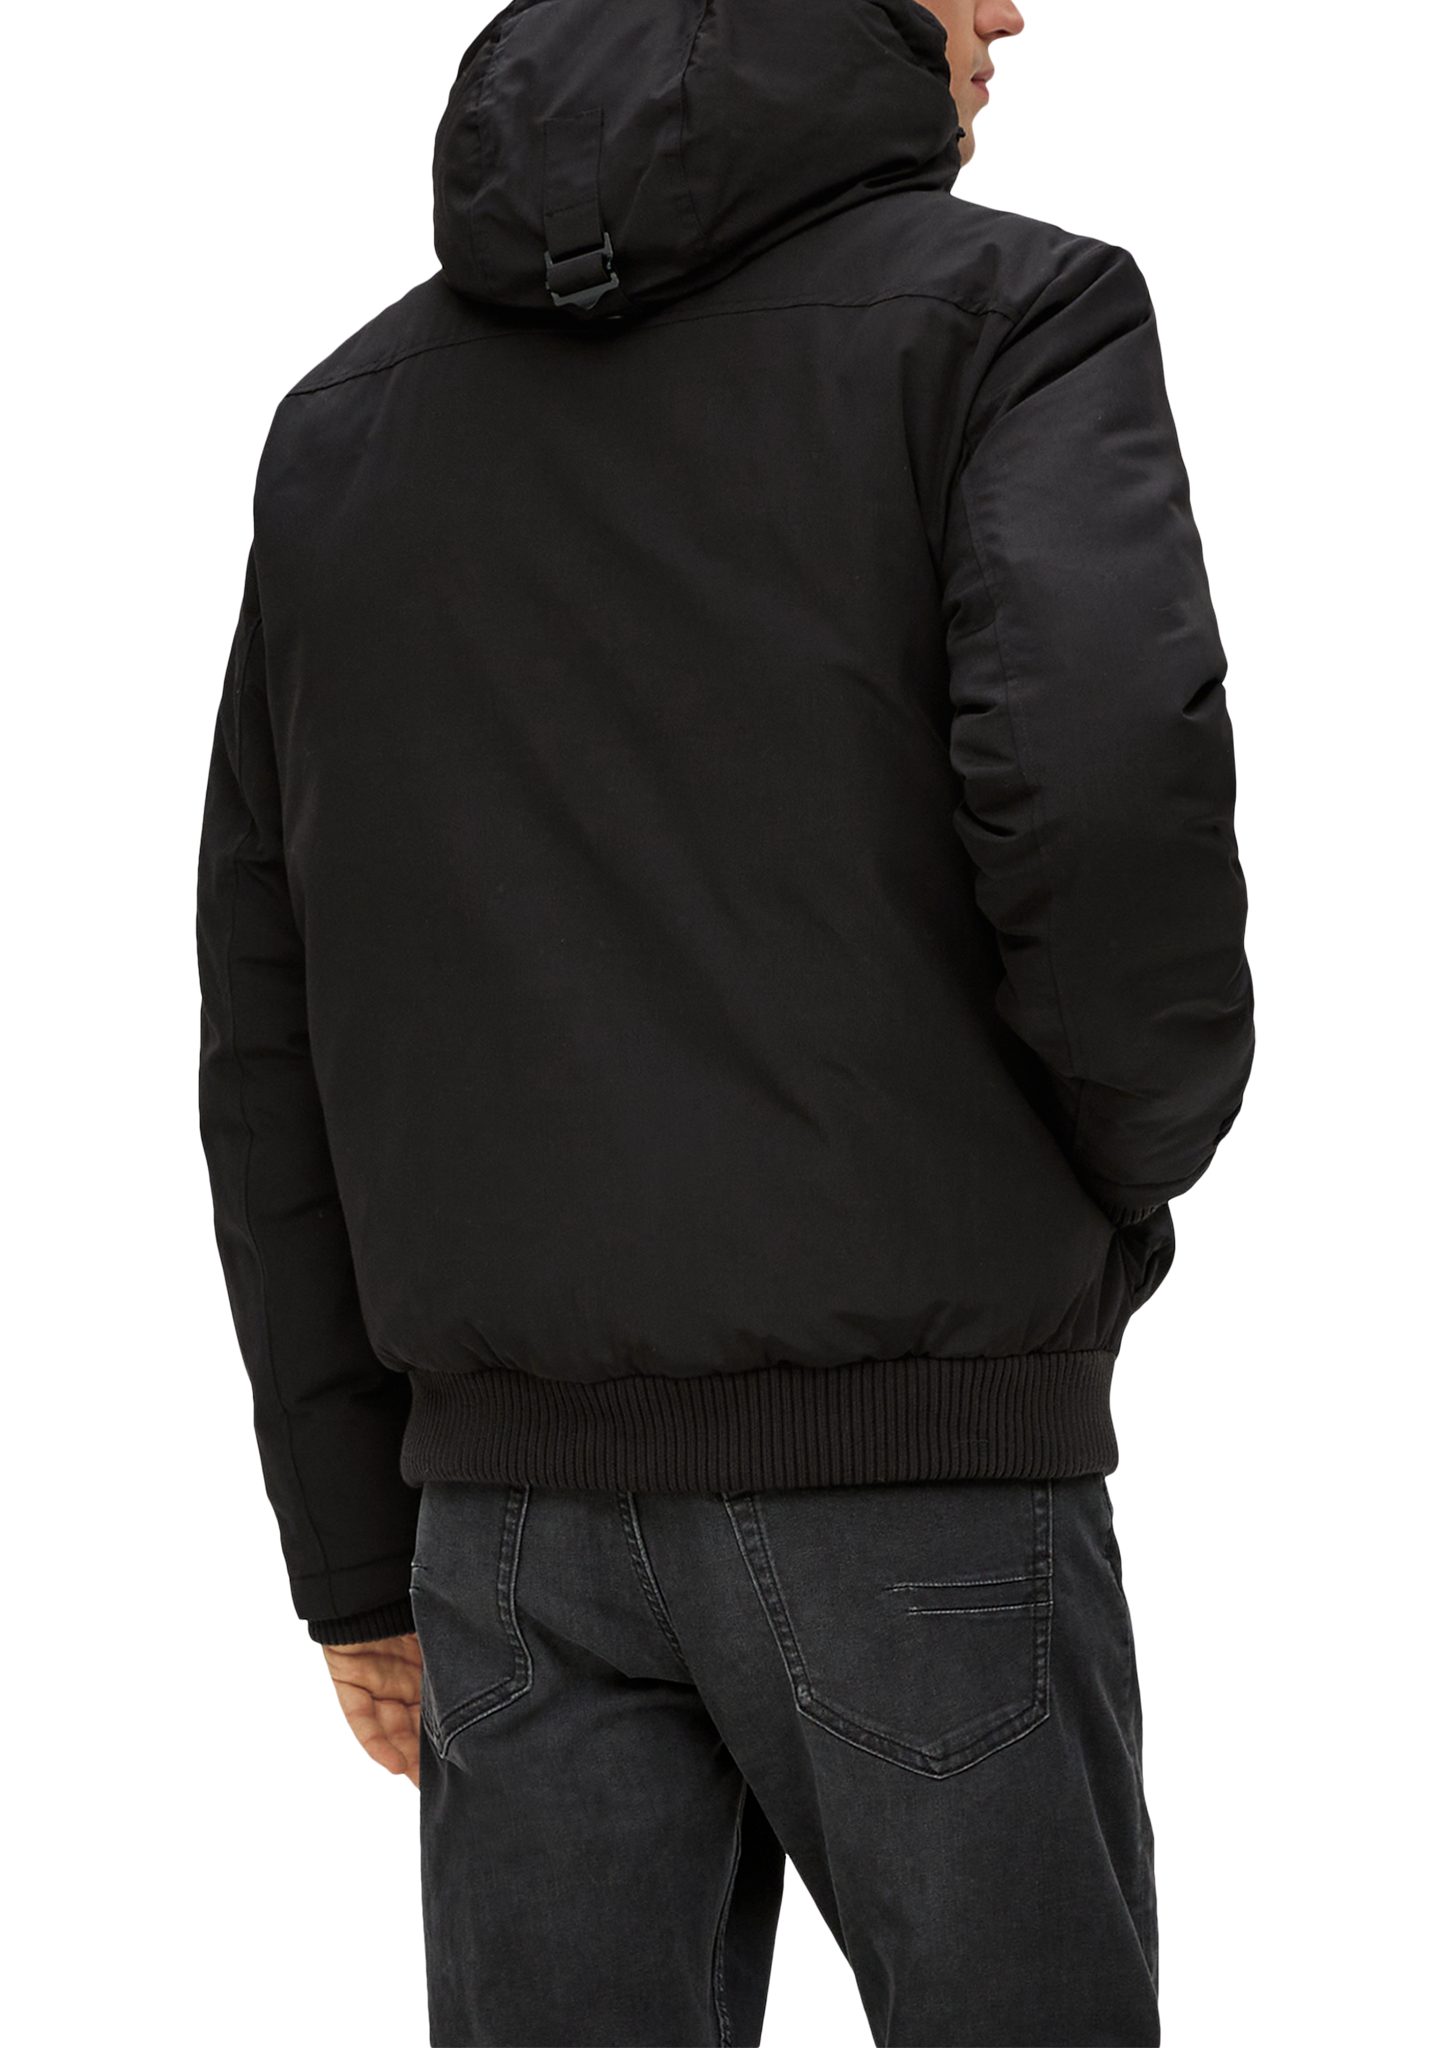 schwarz Pattentaschen Jacke mit Allwetterjacke s.Oliver